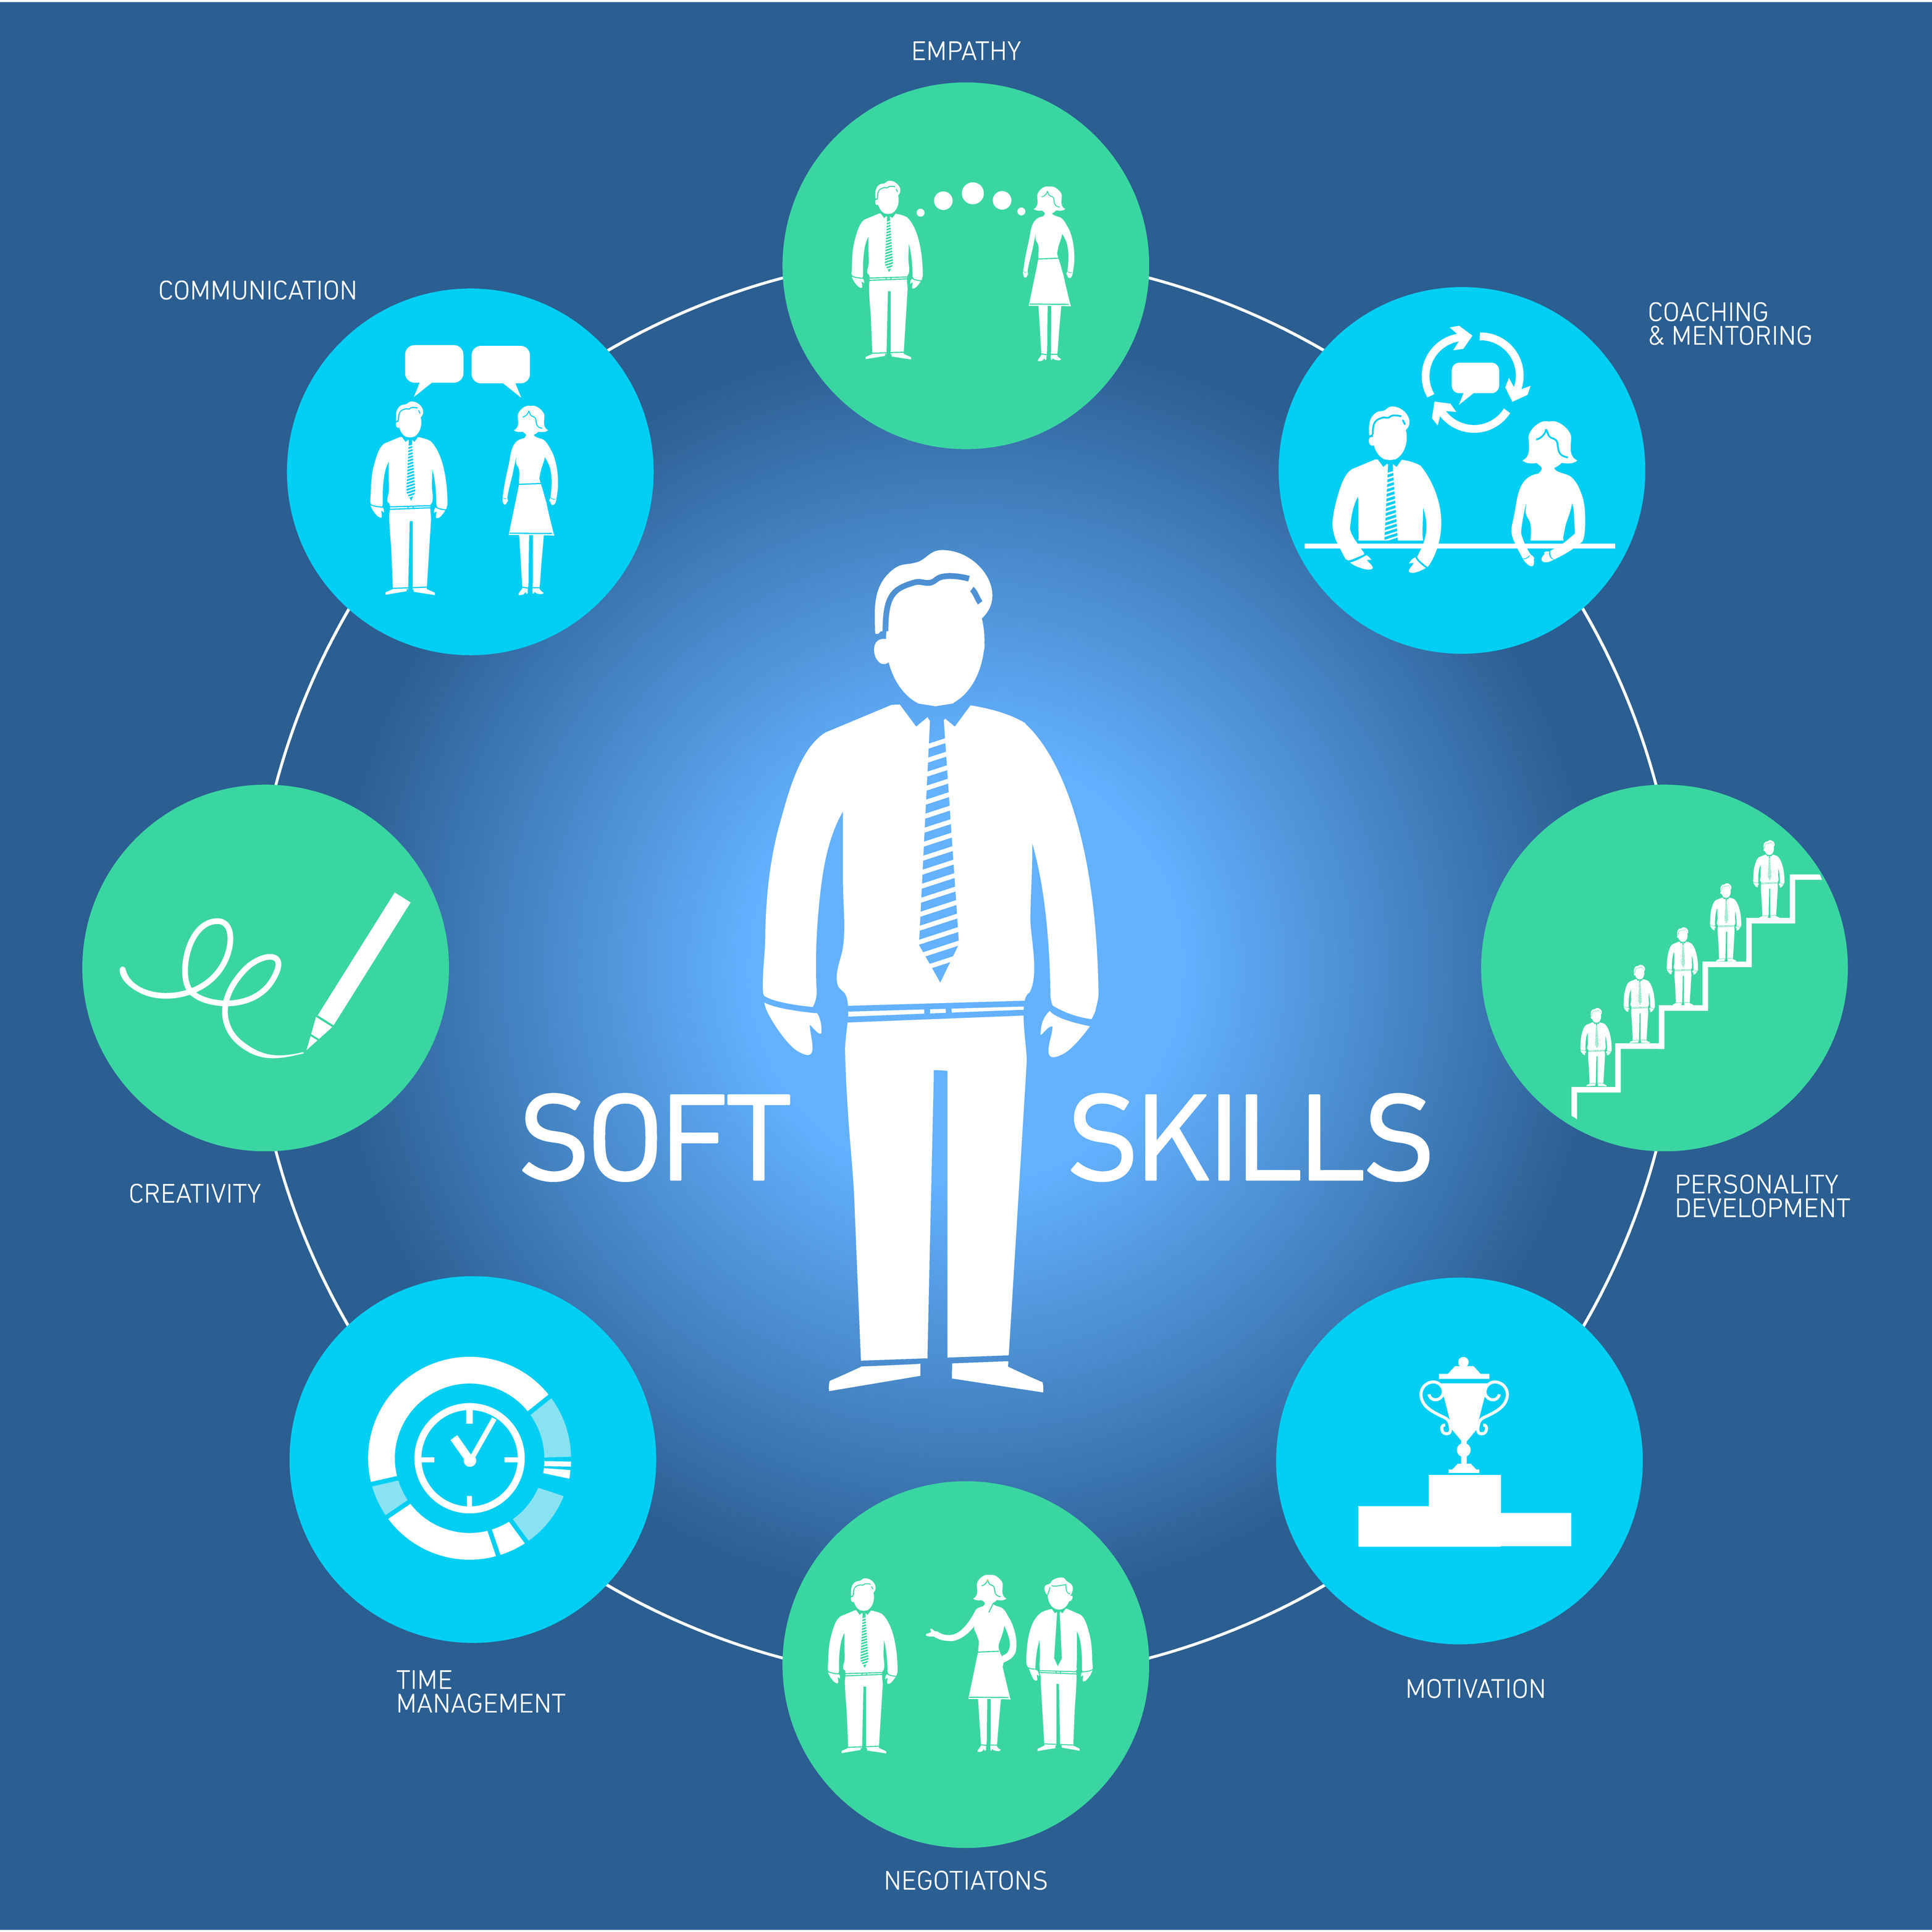 Les candidats de demain : hard skills vs soft skills